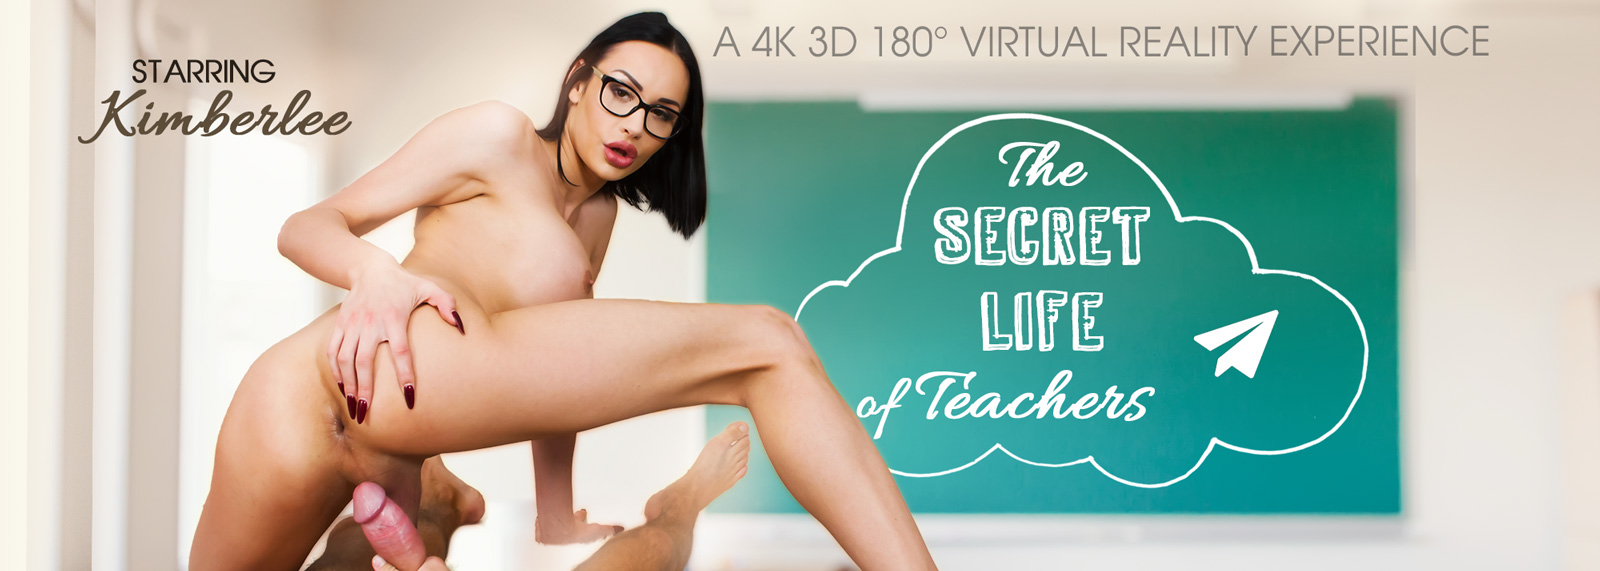 The Secret Life of Teachers - VR Porn Video, Starring Kimber Lee VR